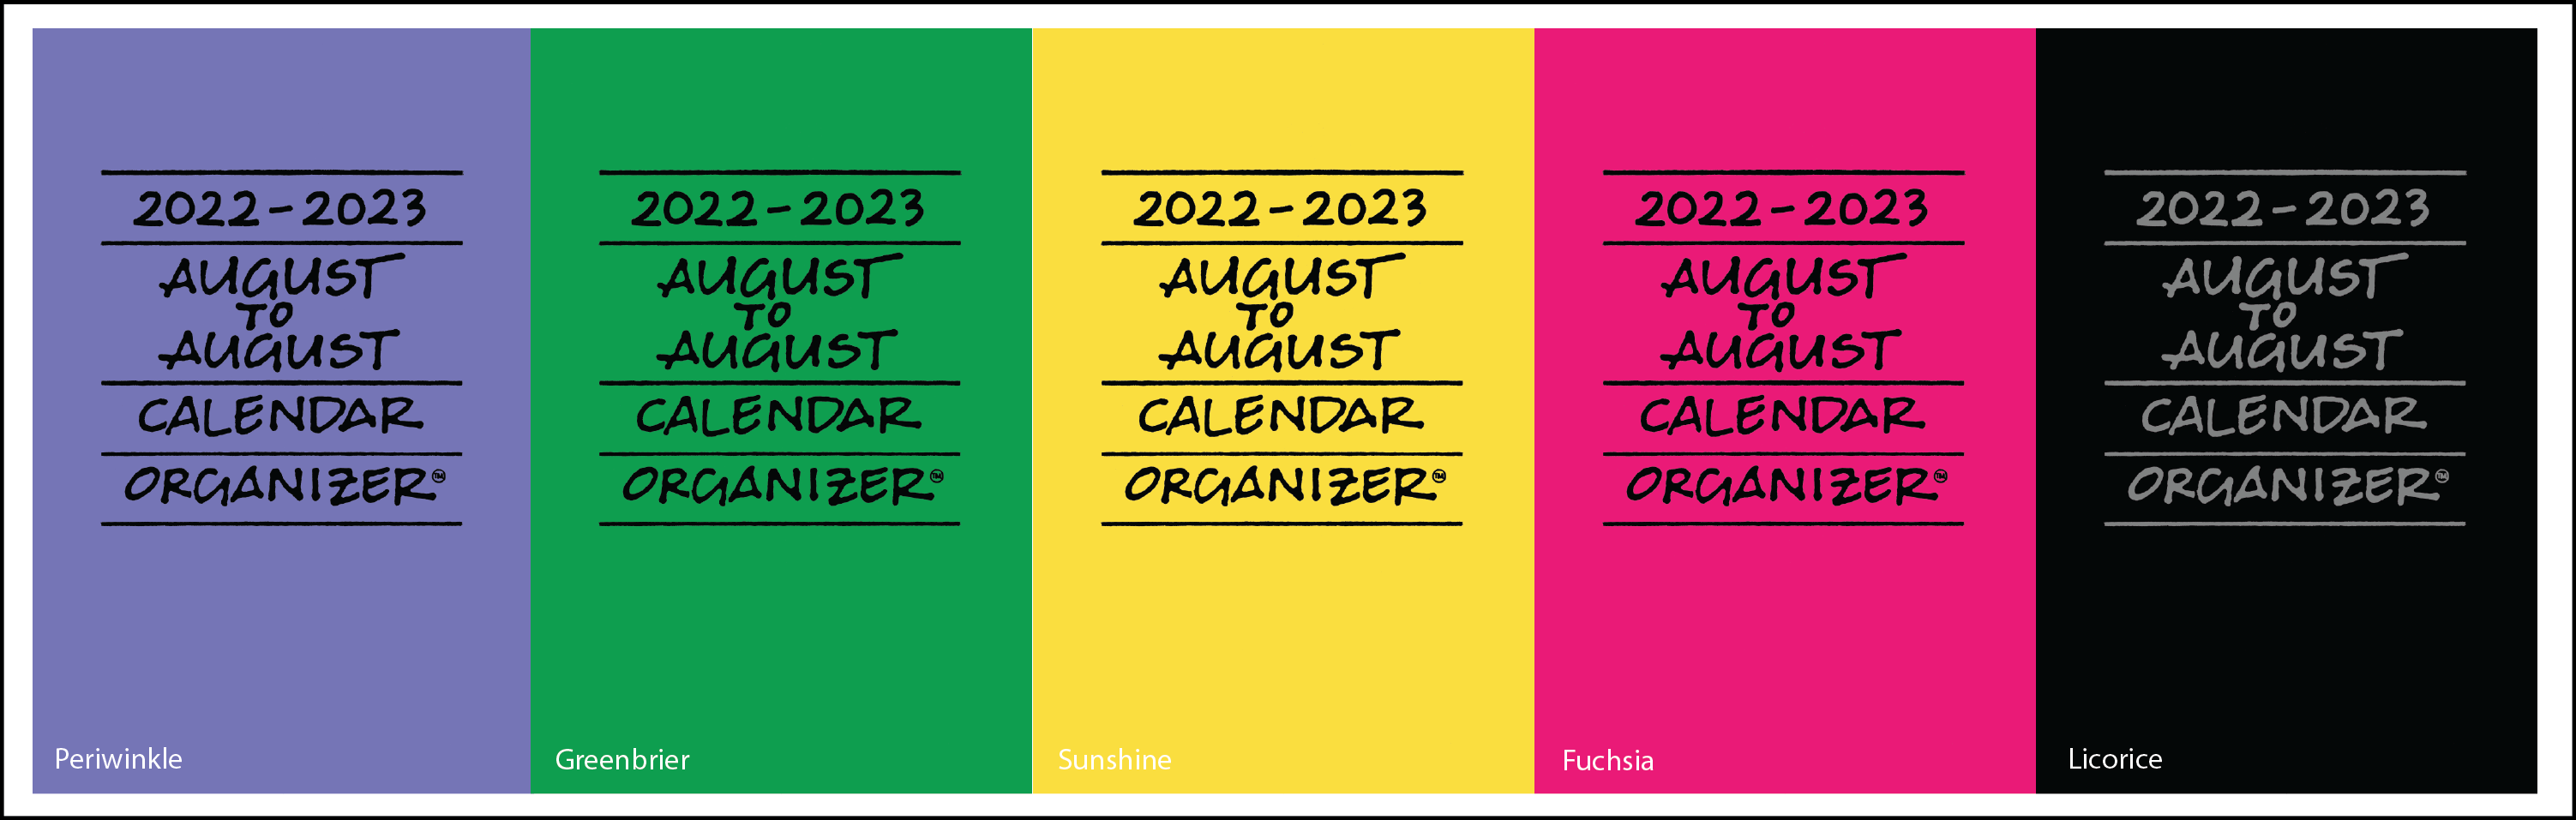 2022-2023年8月至8月策划者图片